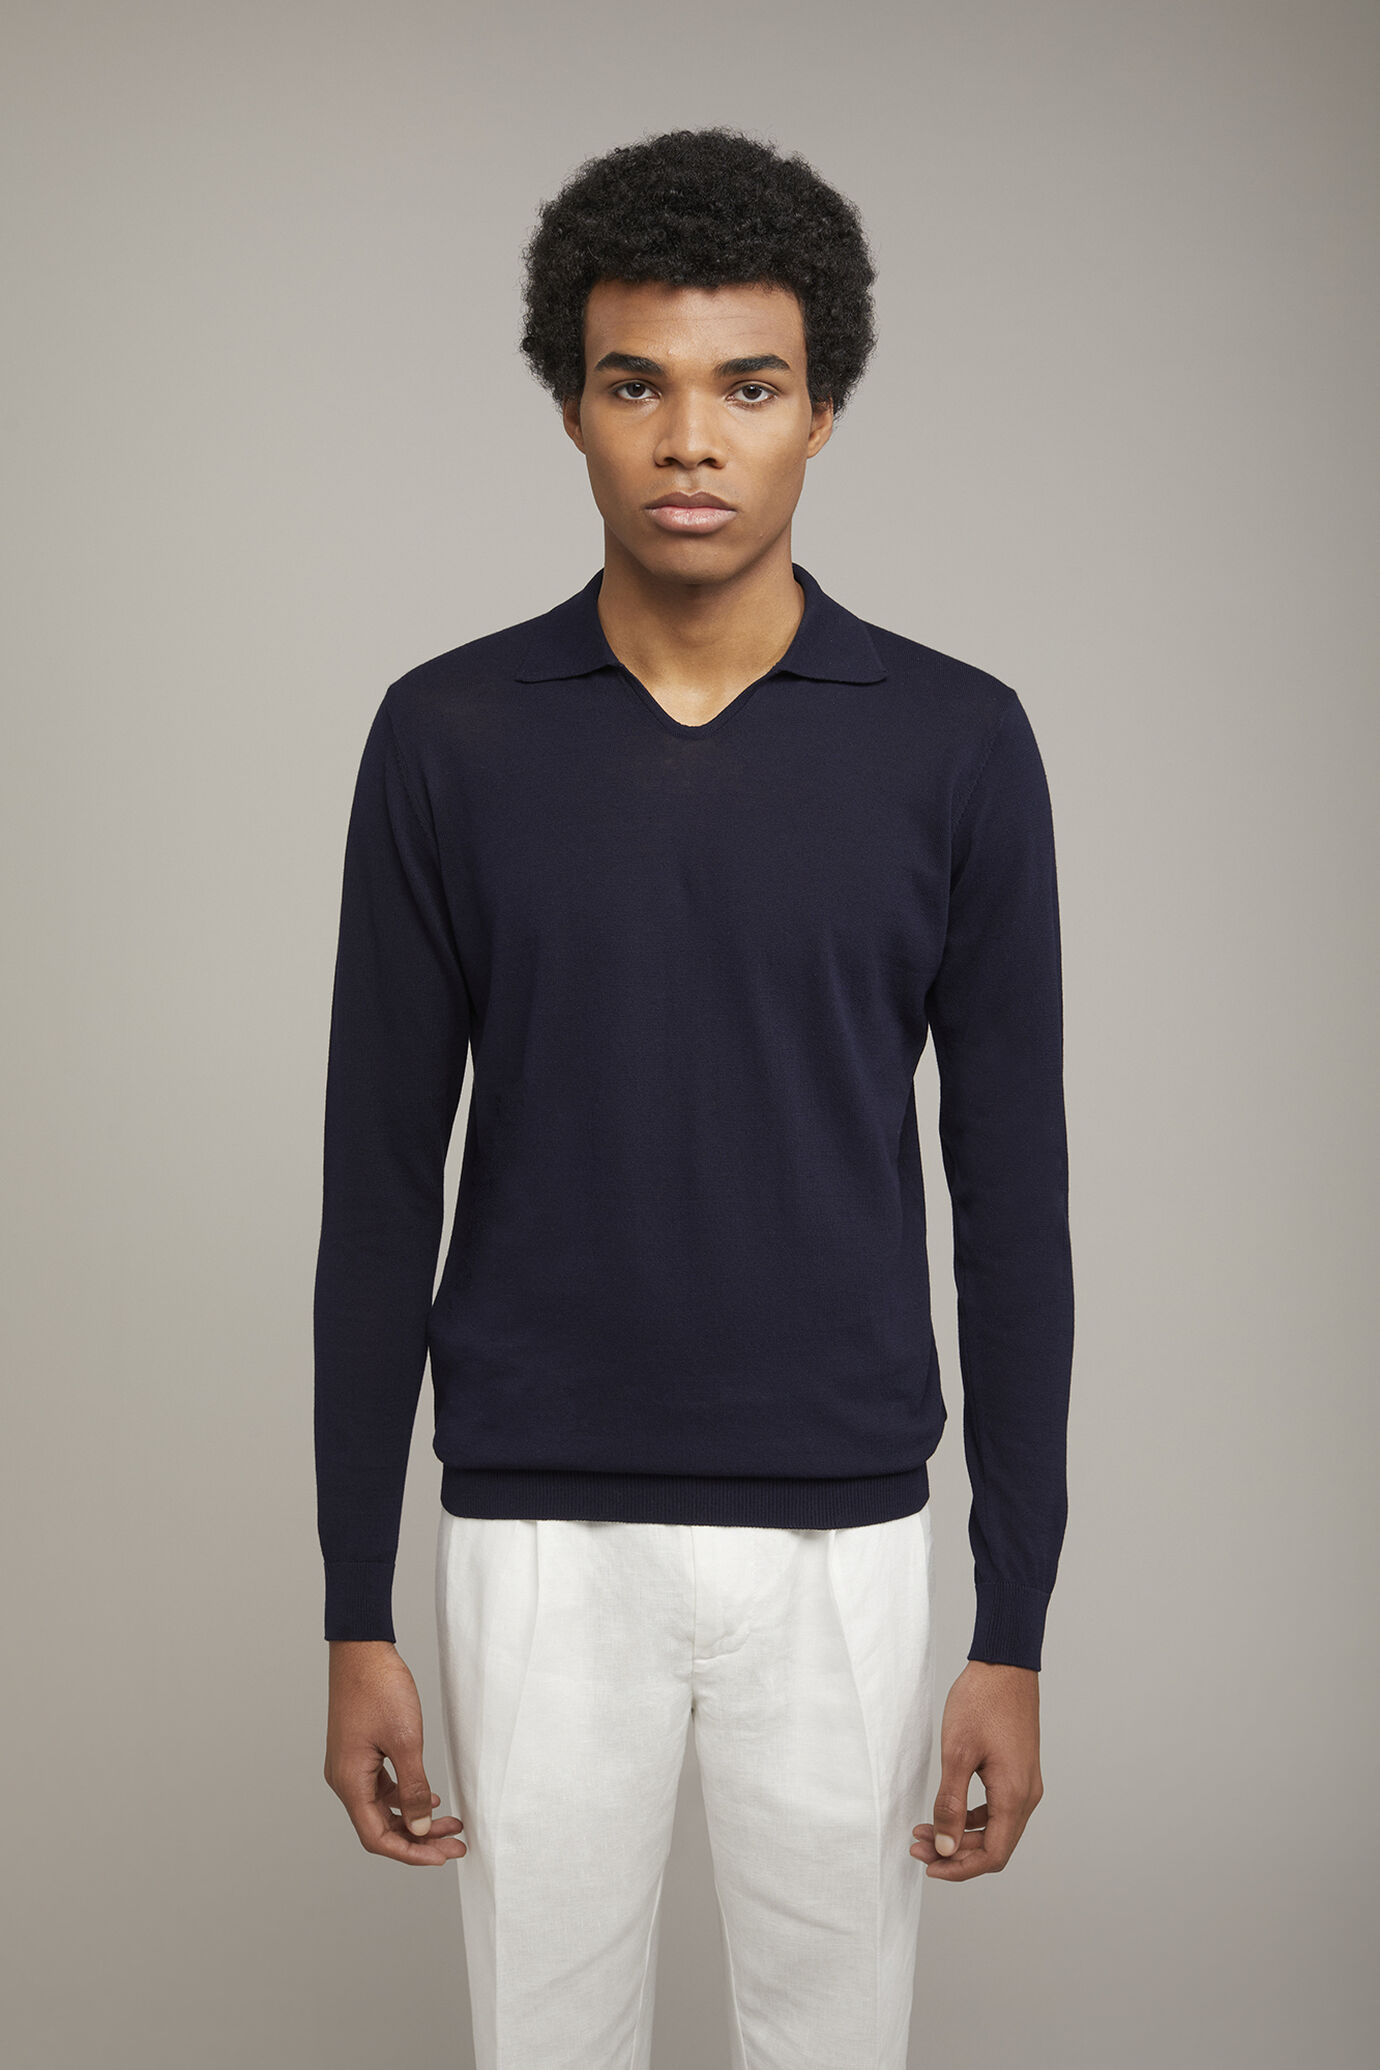 Herren-Poloshirt mit V-Ausschnitt aus 100 % Baumwollstrick und langen Ärmeln in normaler Passform image number 2